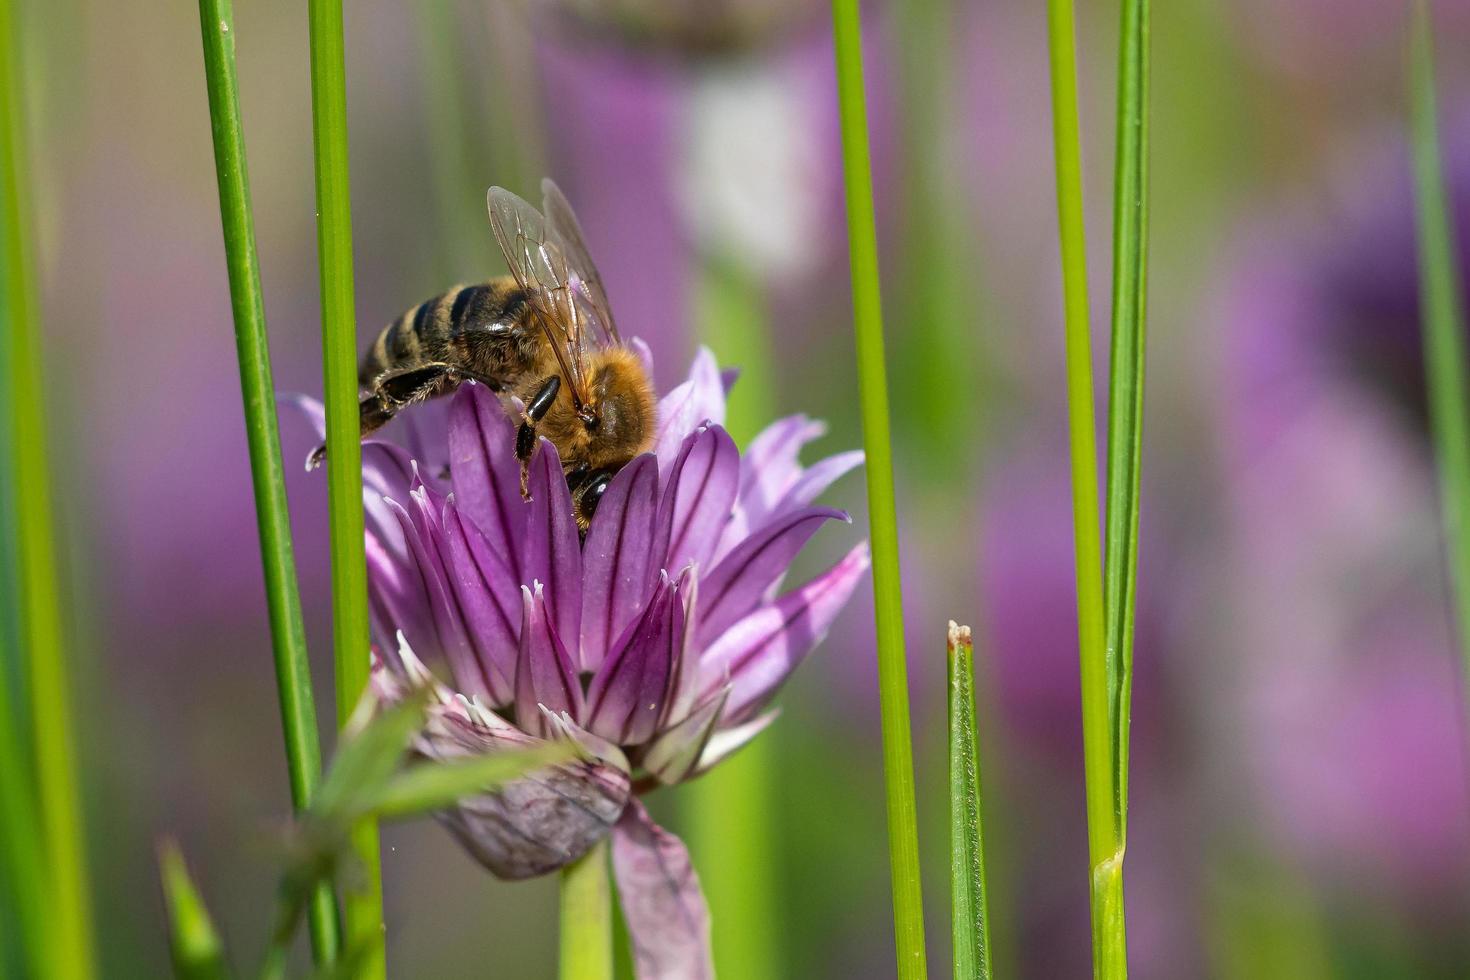 Honig Biene Sammeln Nektar von Schnittlauch Pflanze Blüte. foto